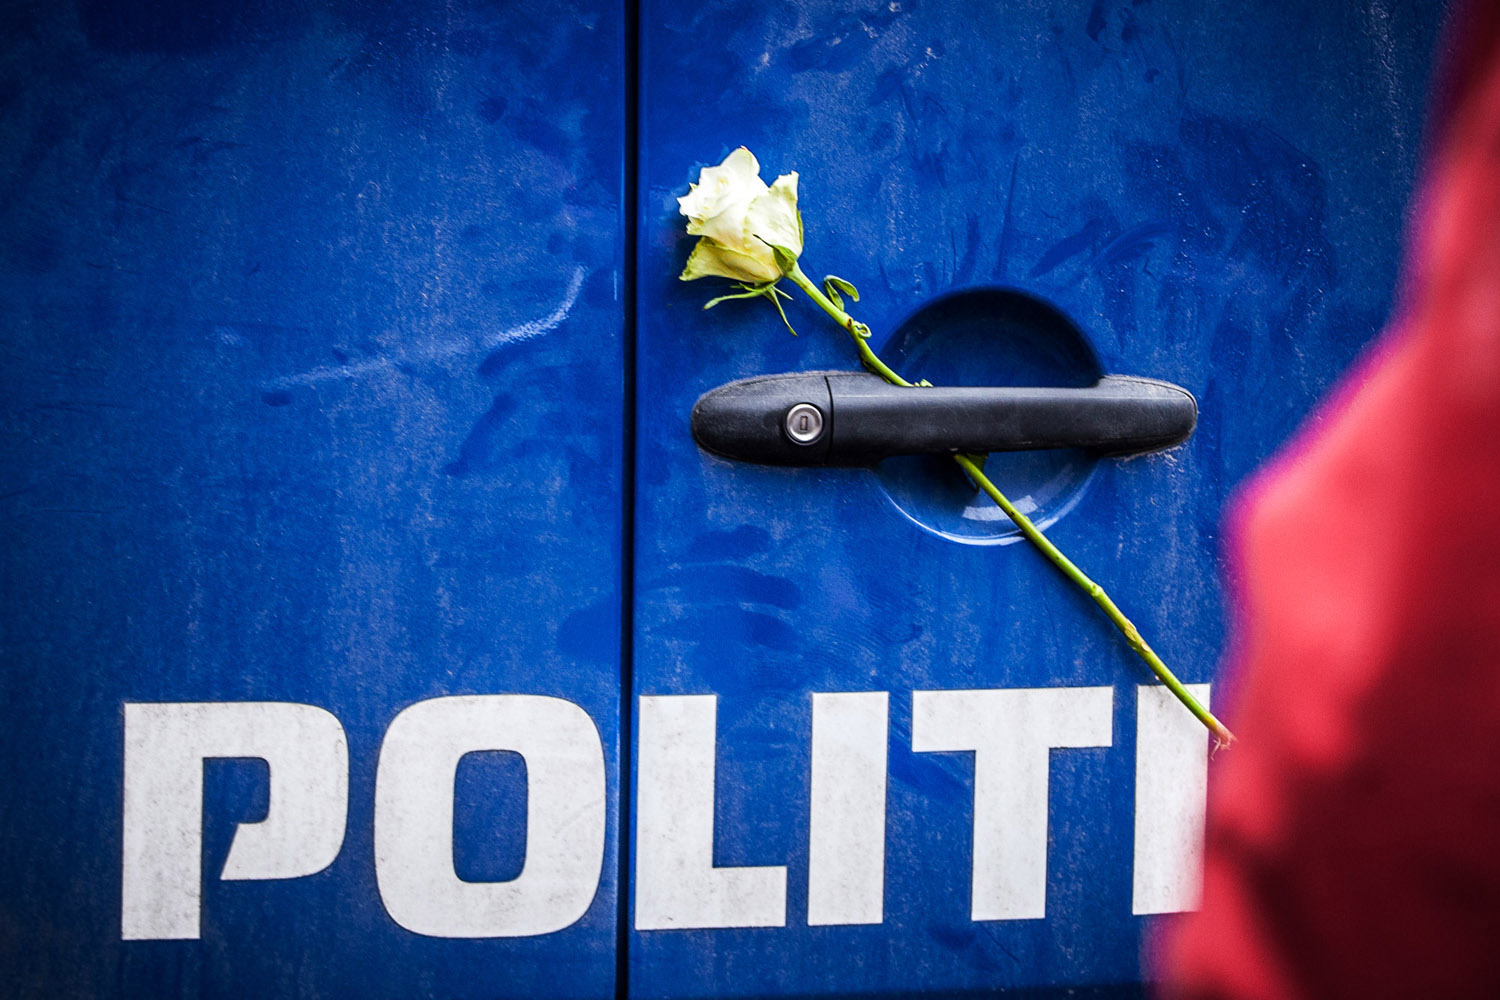 Uddeling af hvide roser - også til politiet